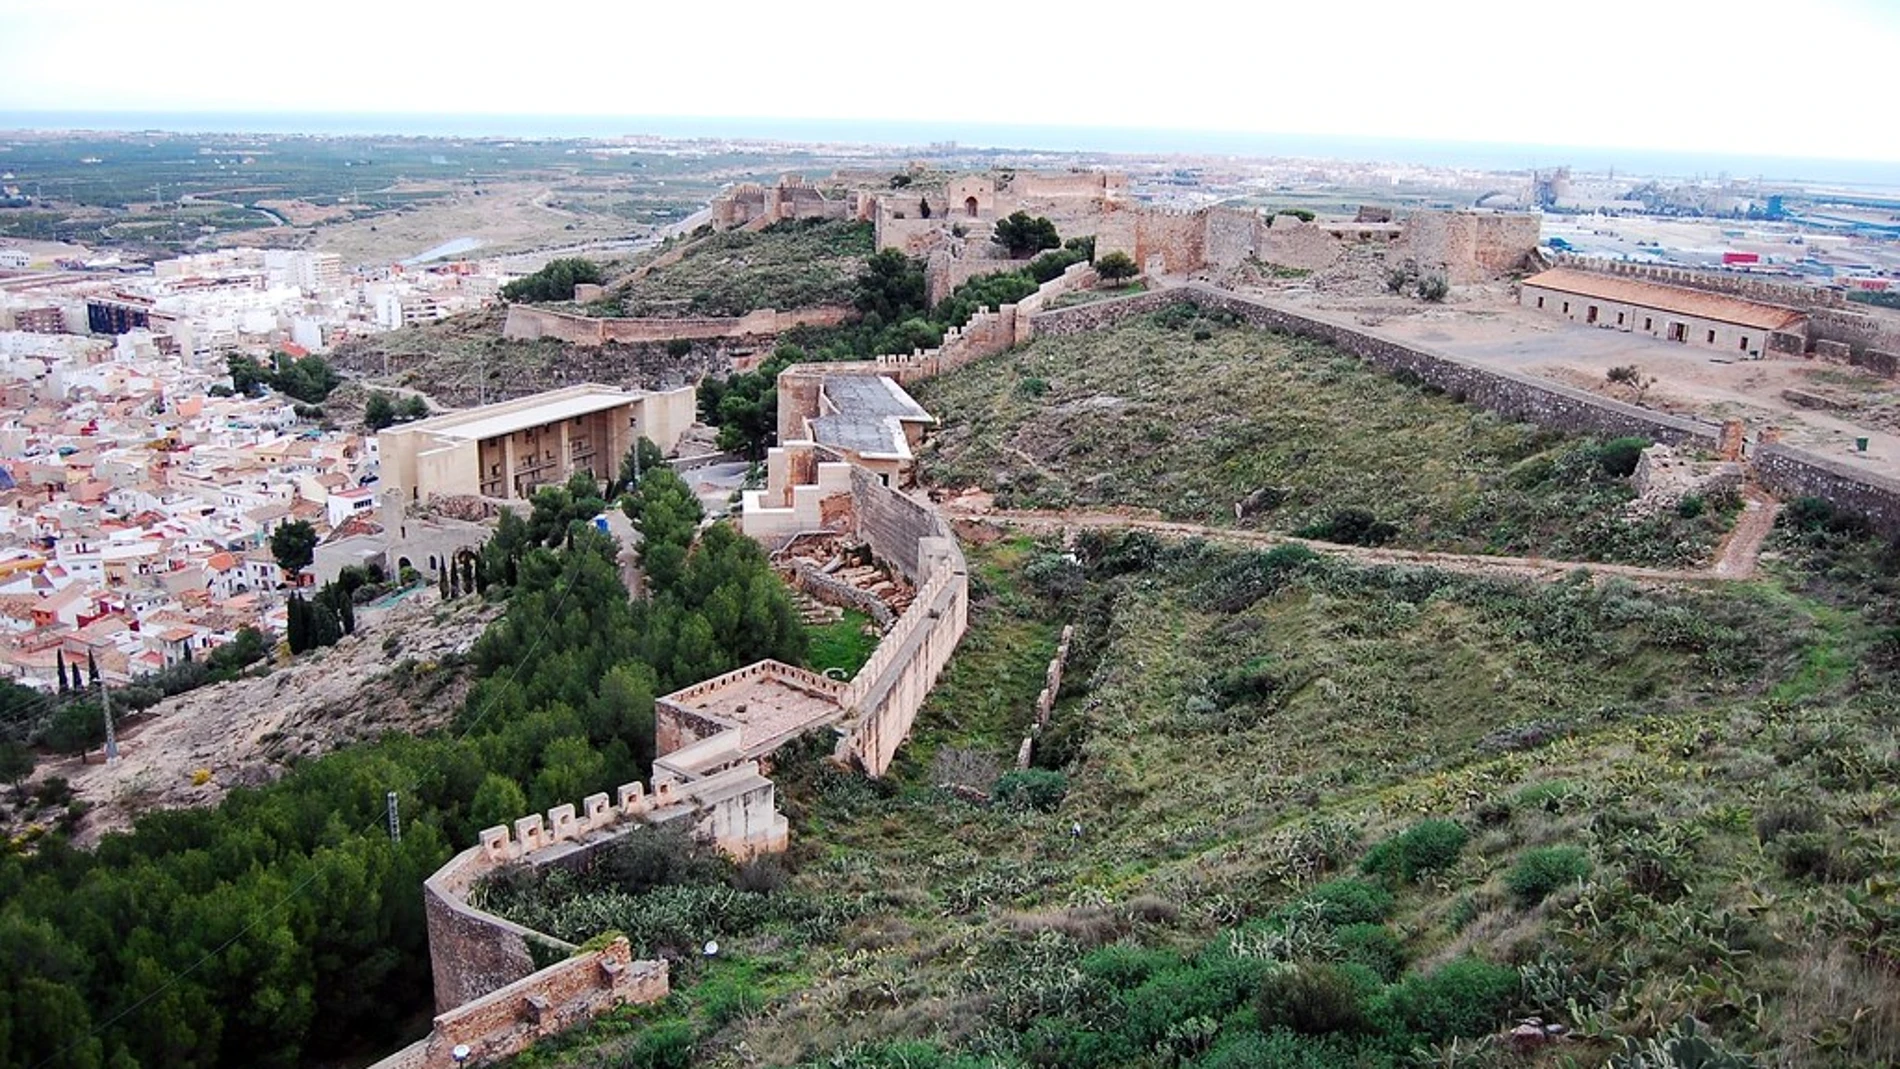 Castillo de Sagunto